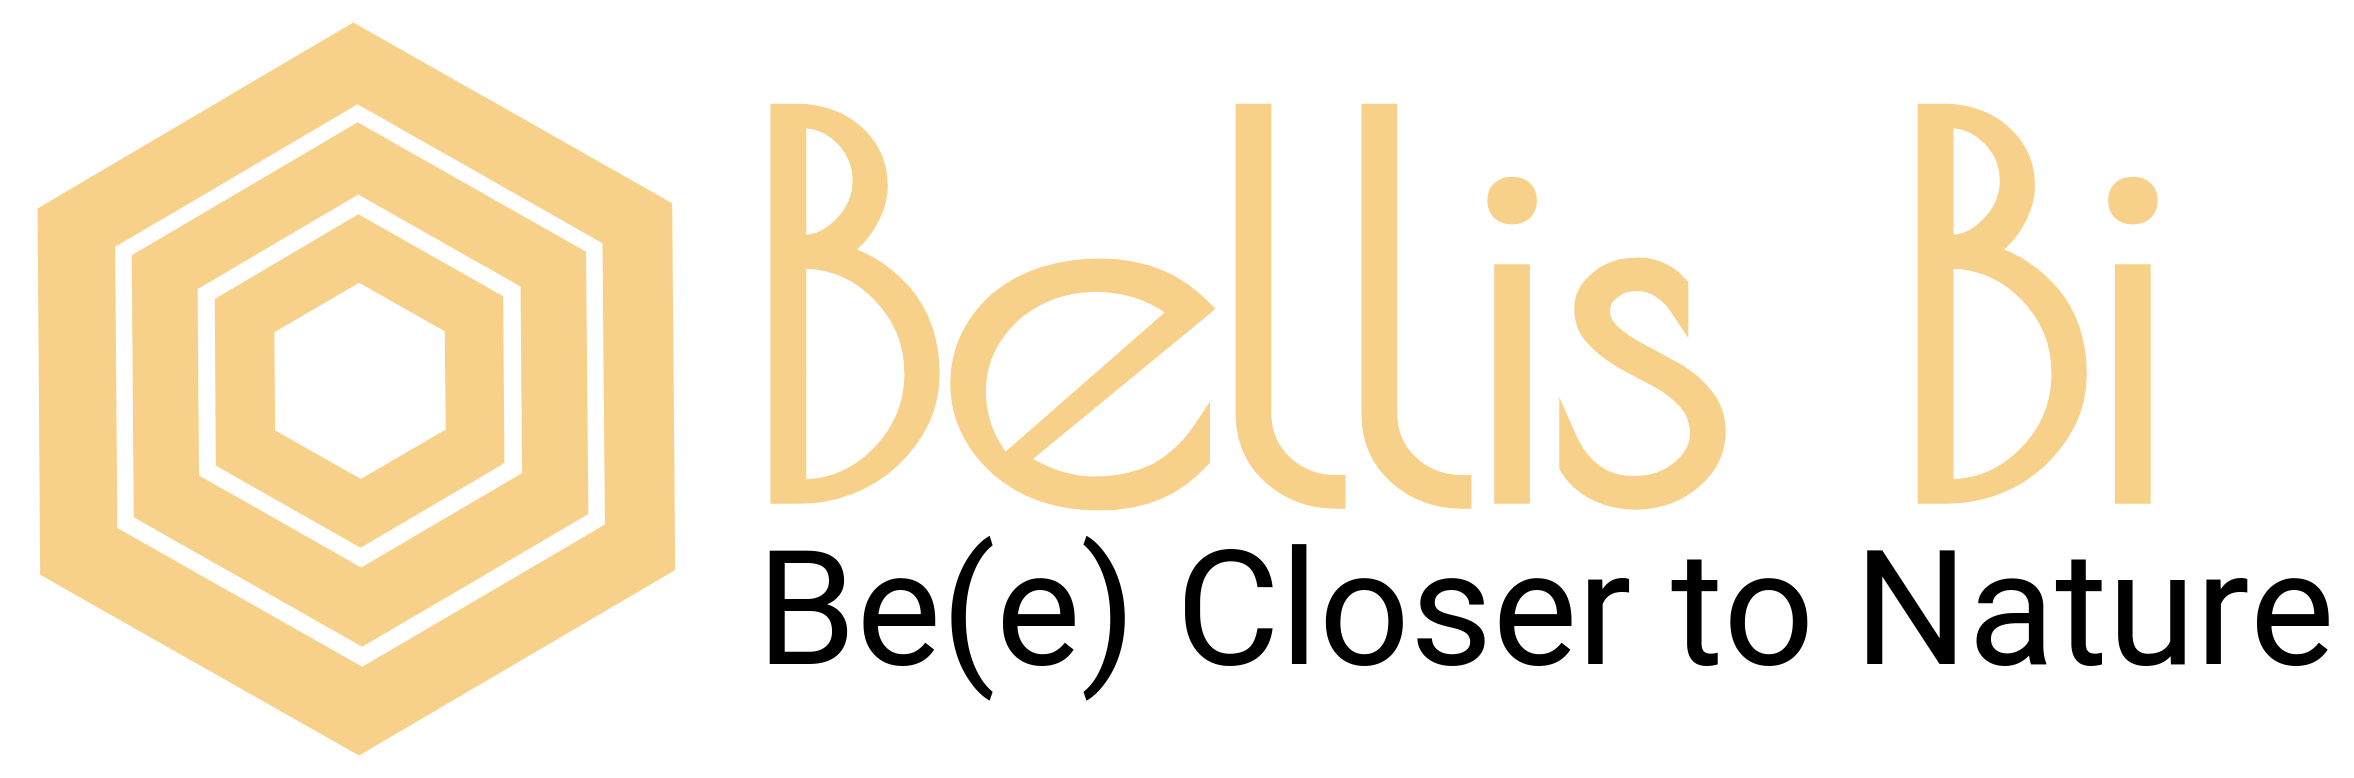 Bellis Bi